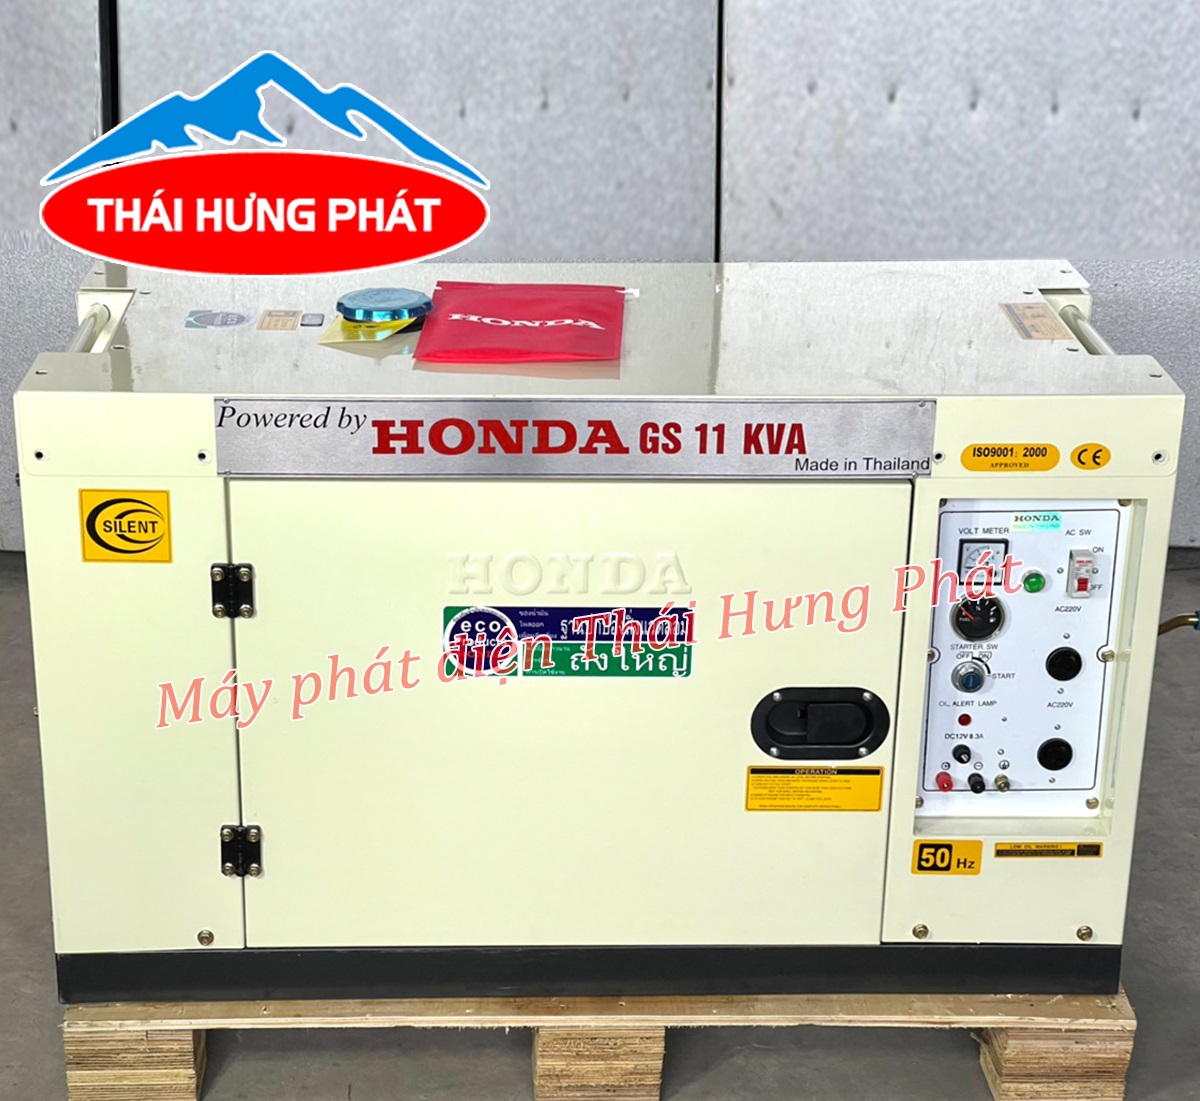 Mua máy phát Honda giá rẻ, uy tín, chất lượng ở địa chỉ nào tại Hà Nội?